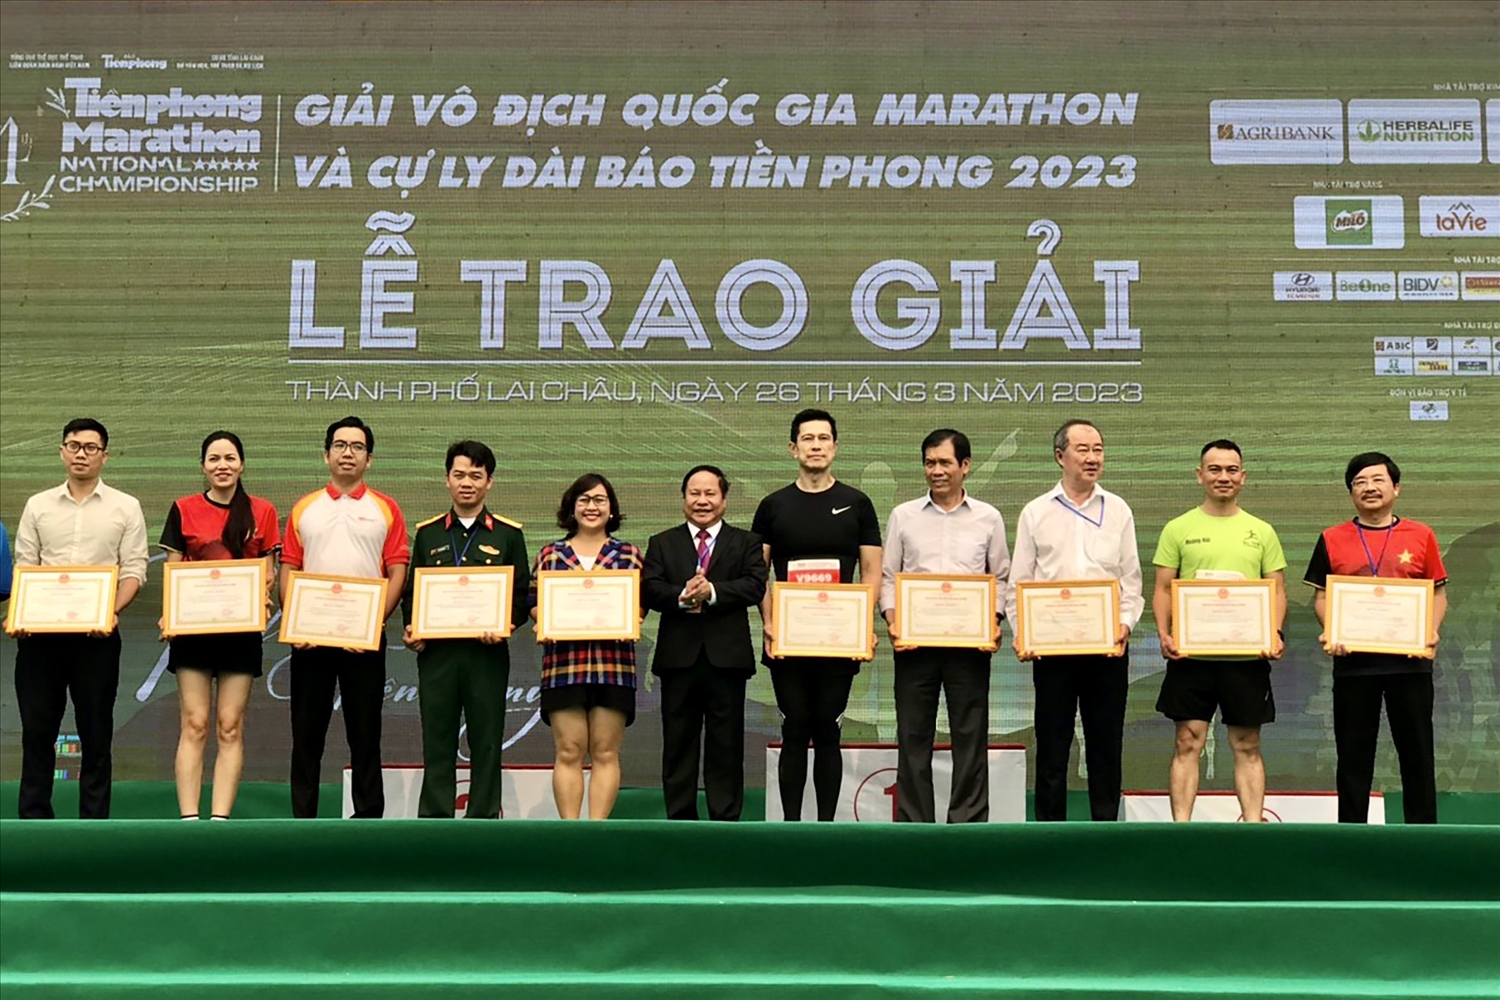 Có 25 tập thể và 12 cá nhân được Chủ tịch UBND tặng Bằng khen tại Giải Vô địch quốc gia Marathon và cự ly dài Báo Tiền Phong lần thứ 64 năm 2023